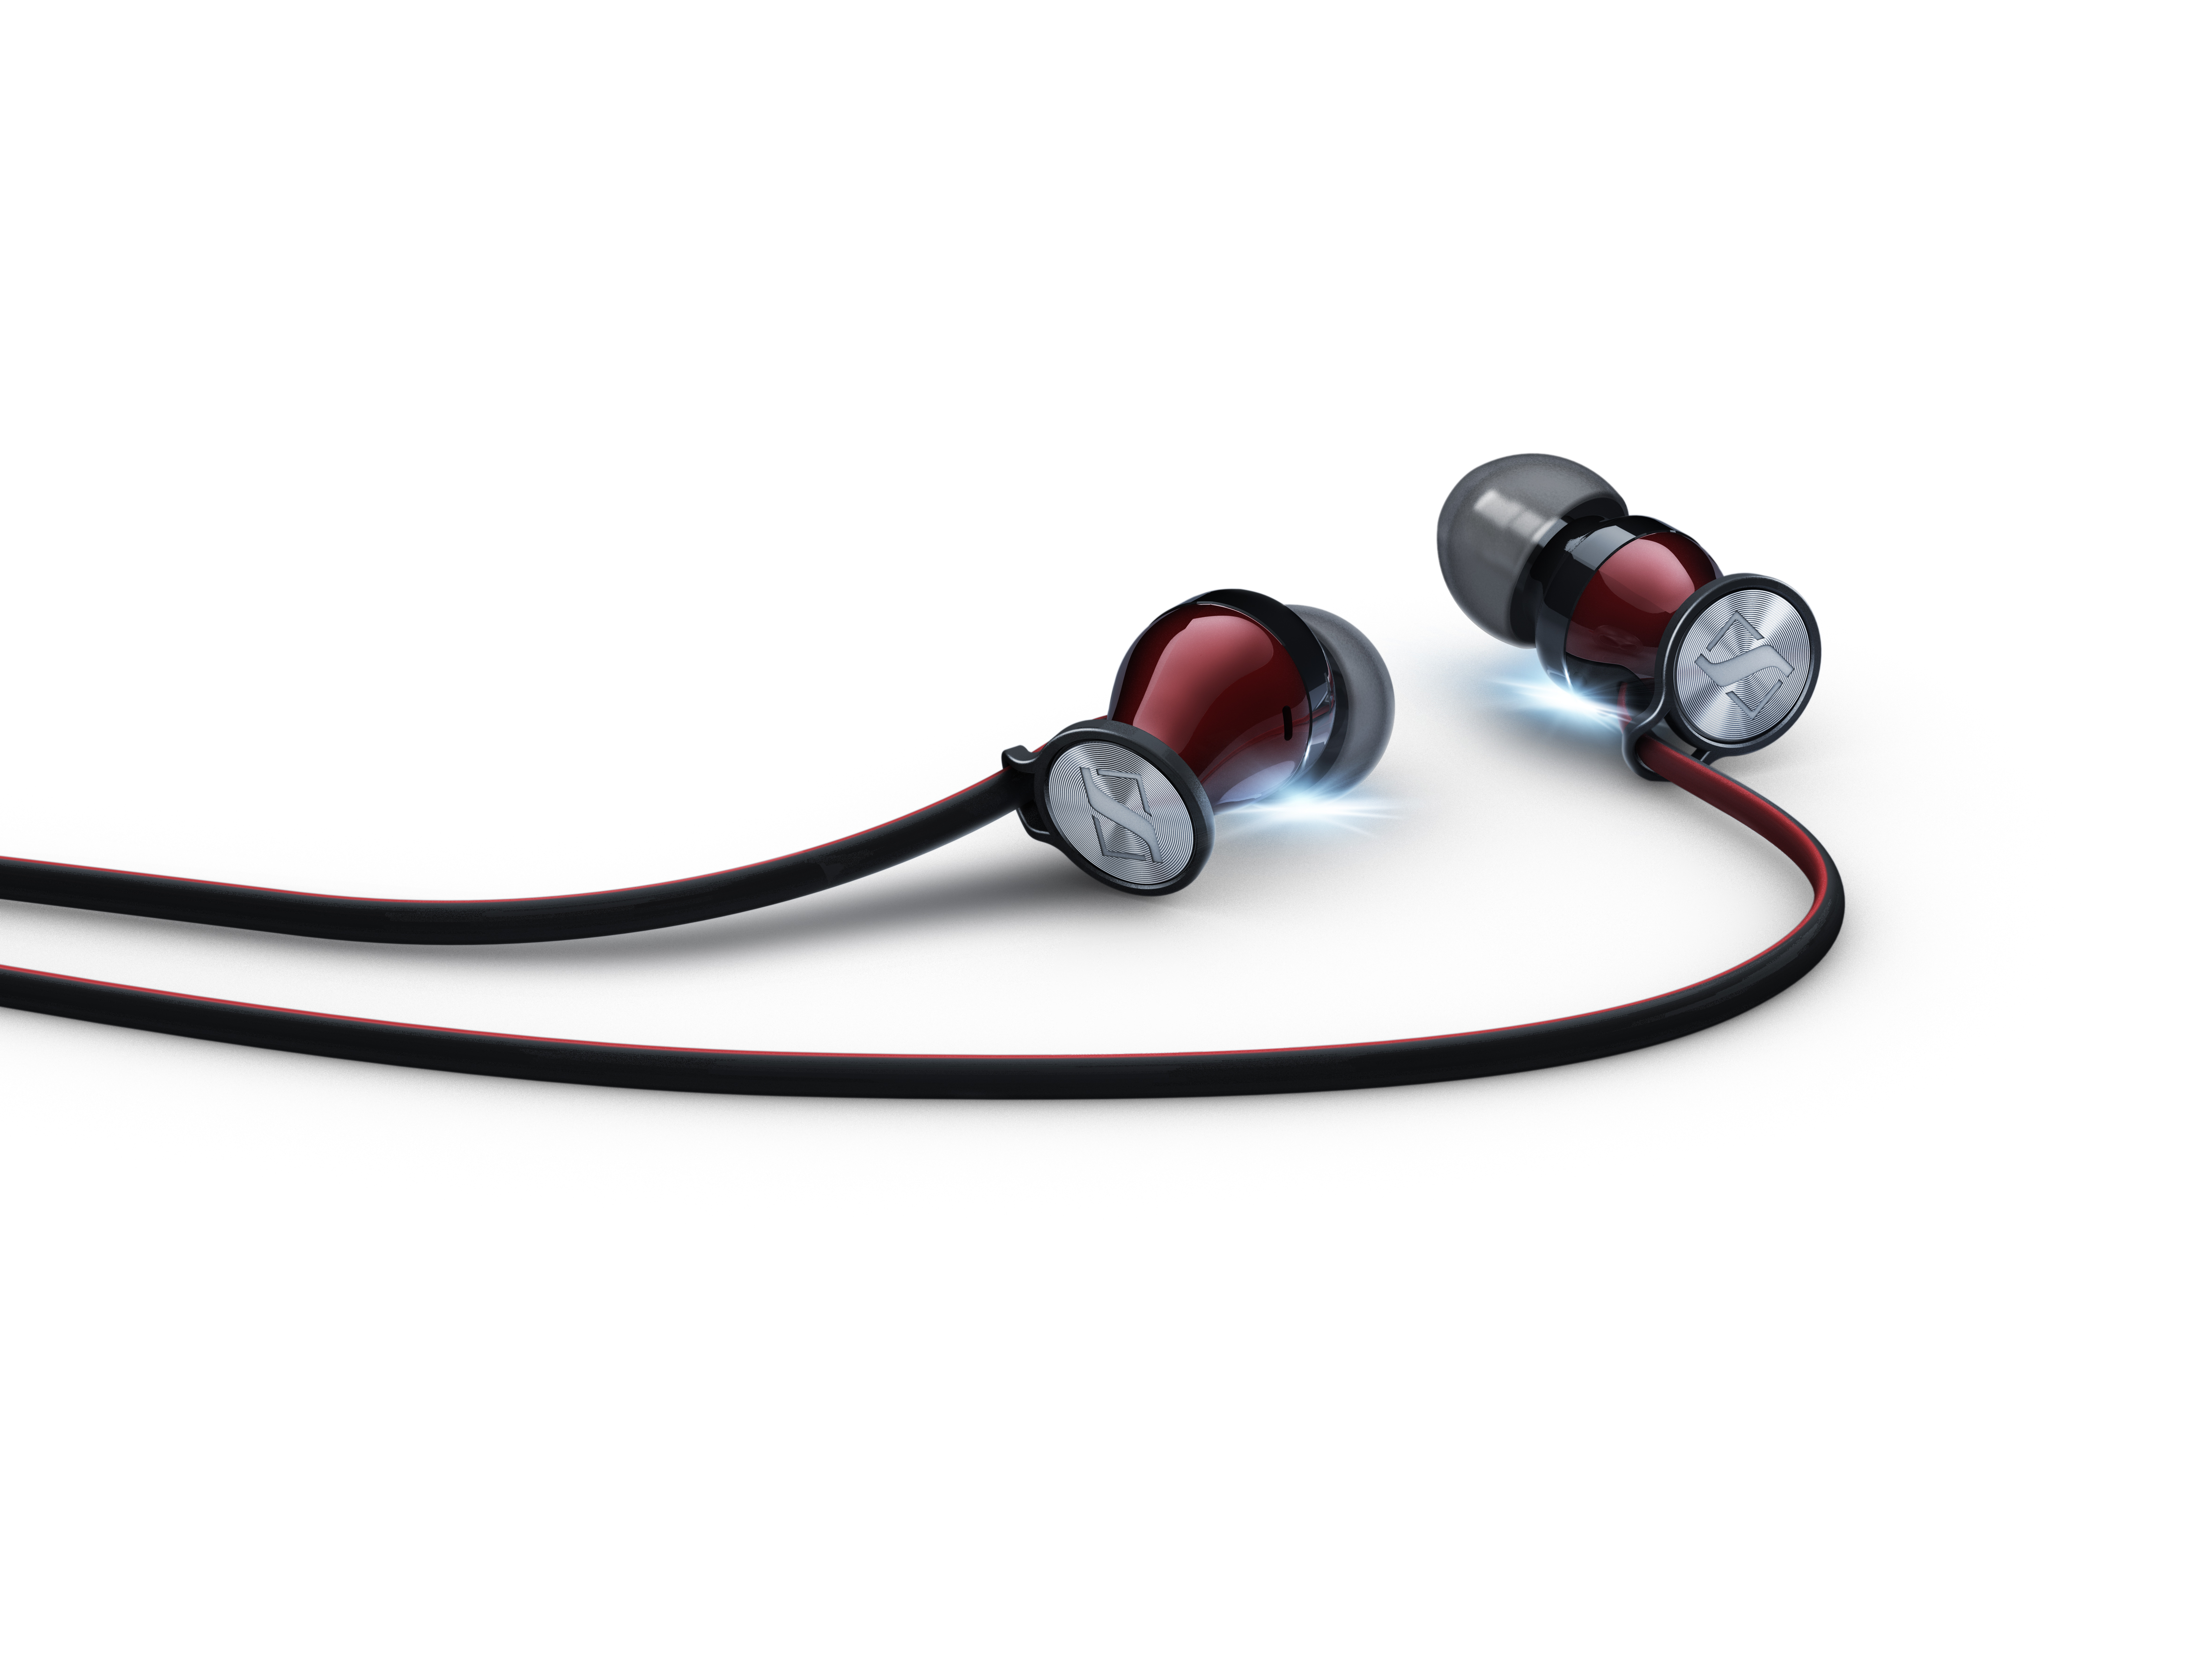 sennheiser-momentum-in-ear-headphones-5